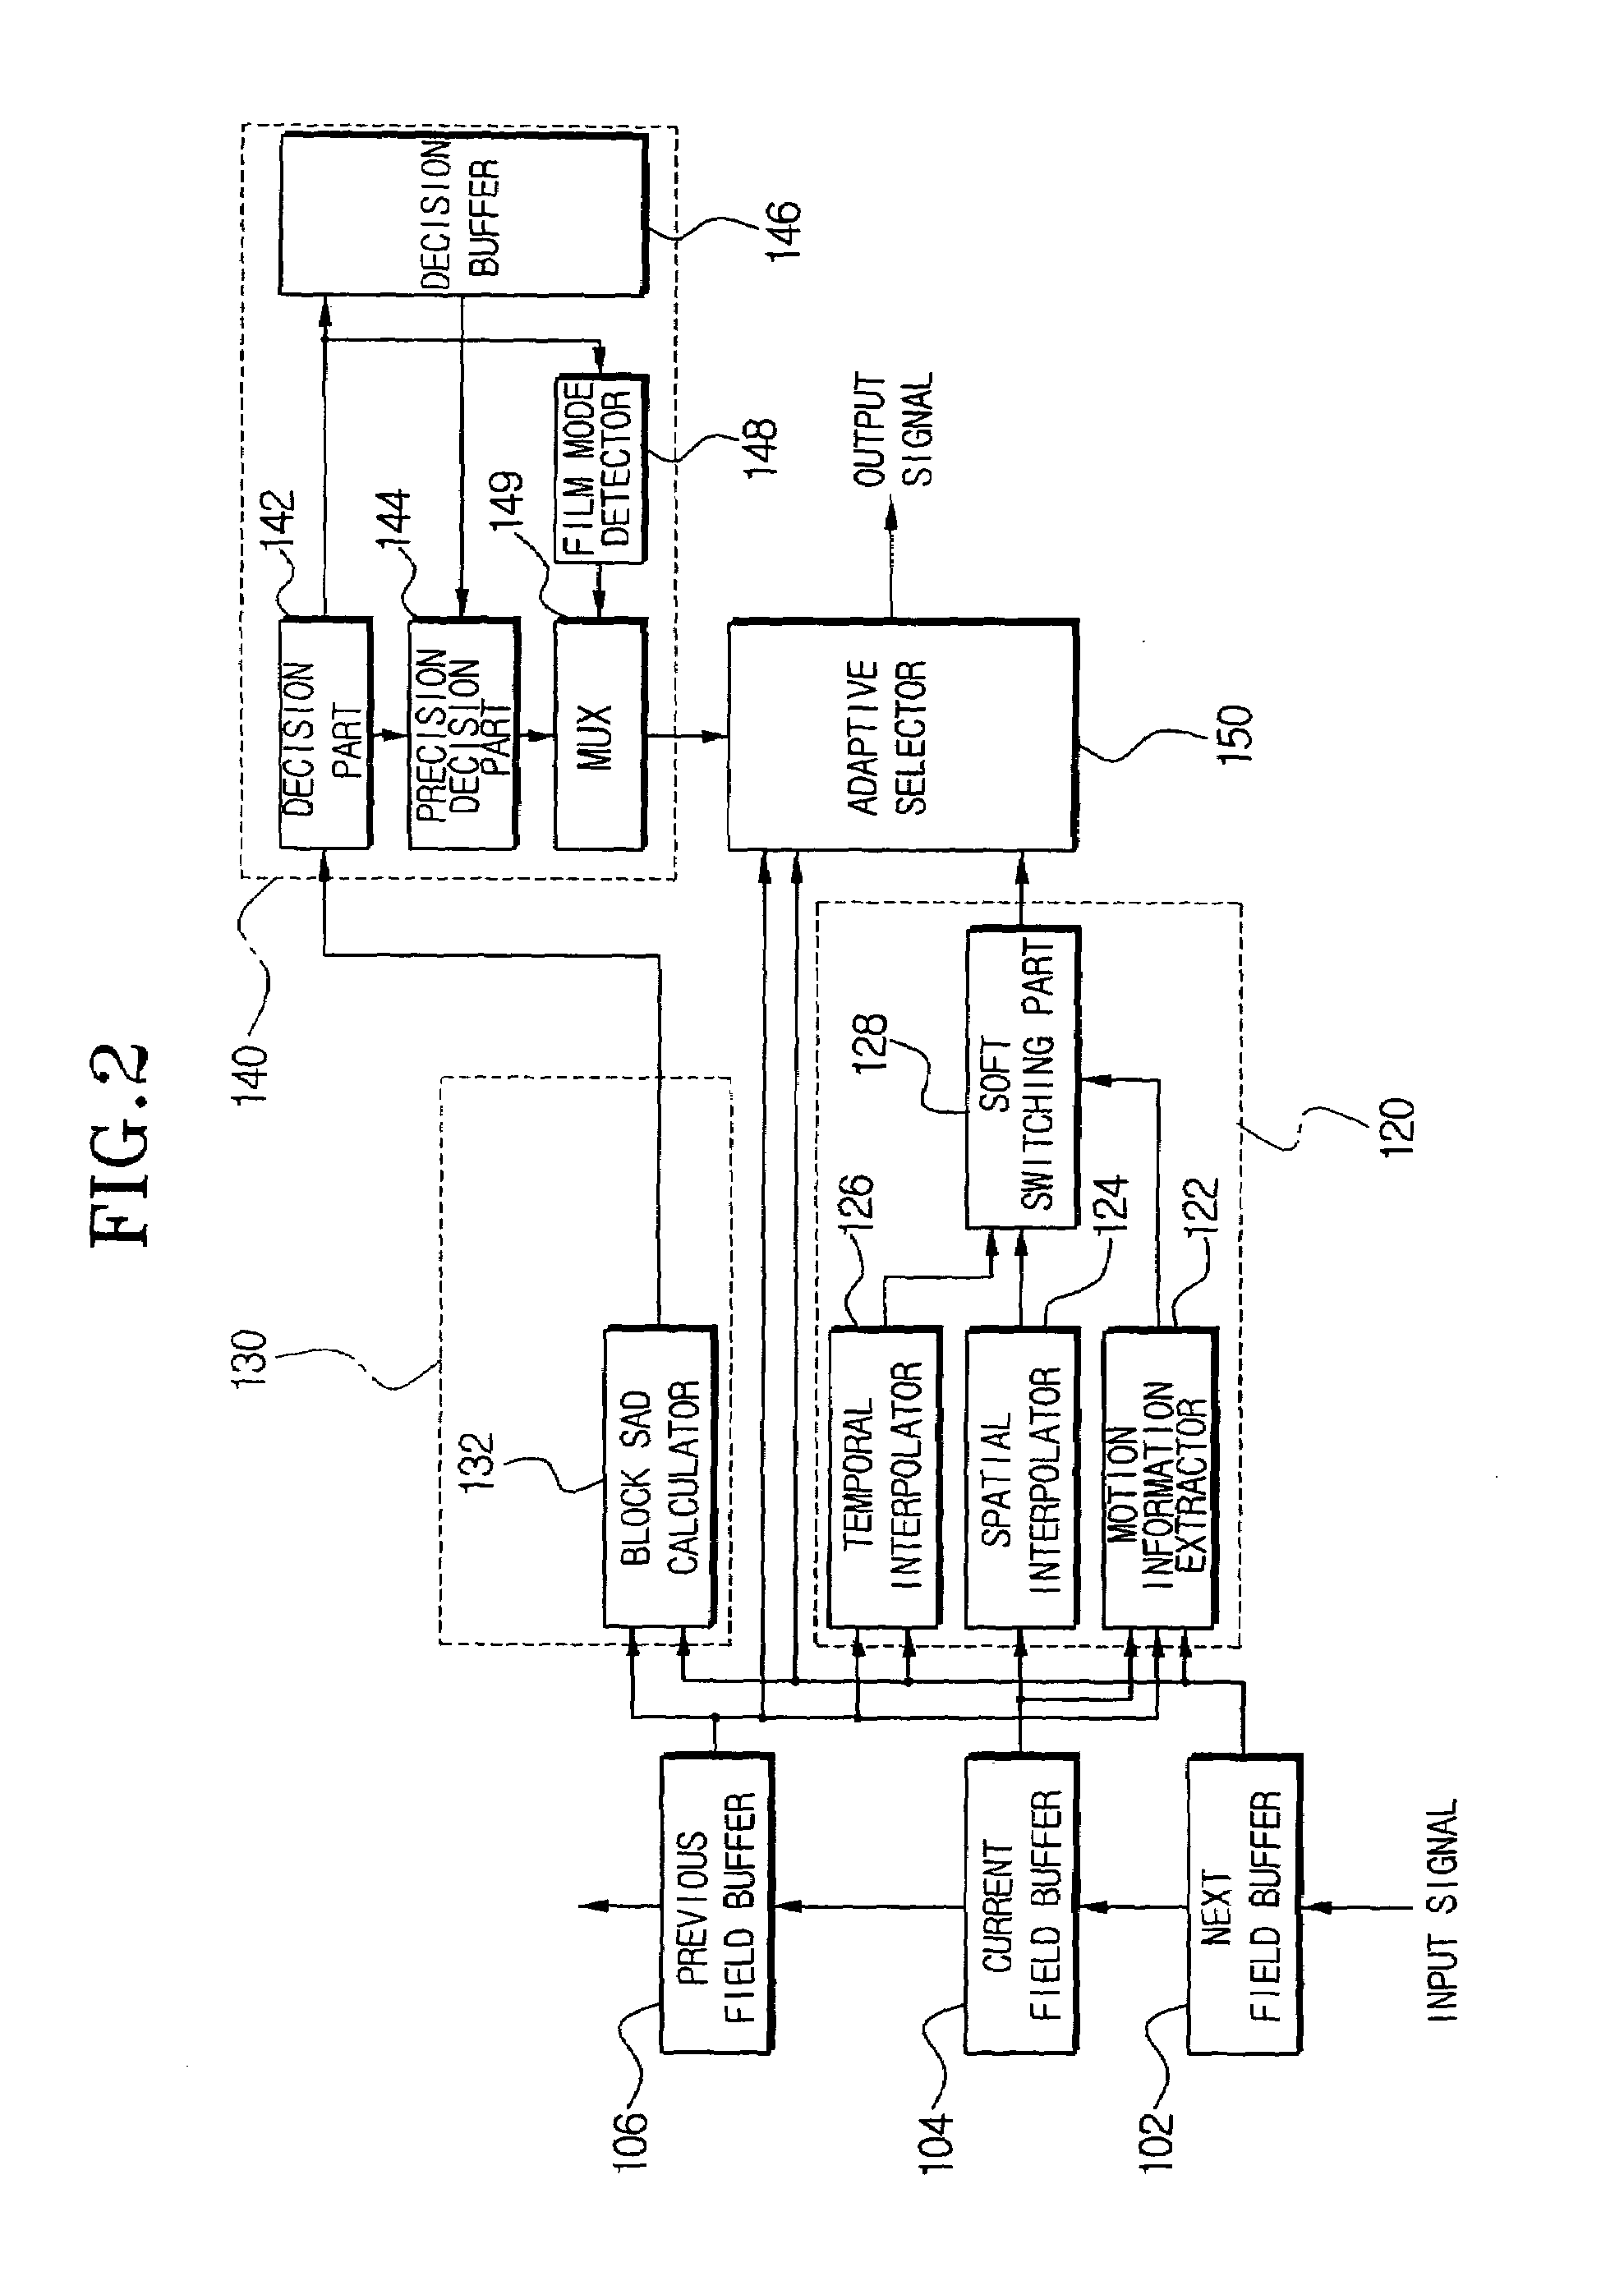 Deinterlacing apparatus and method